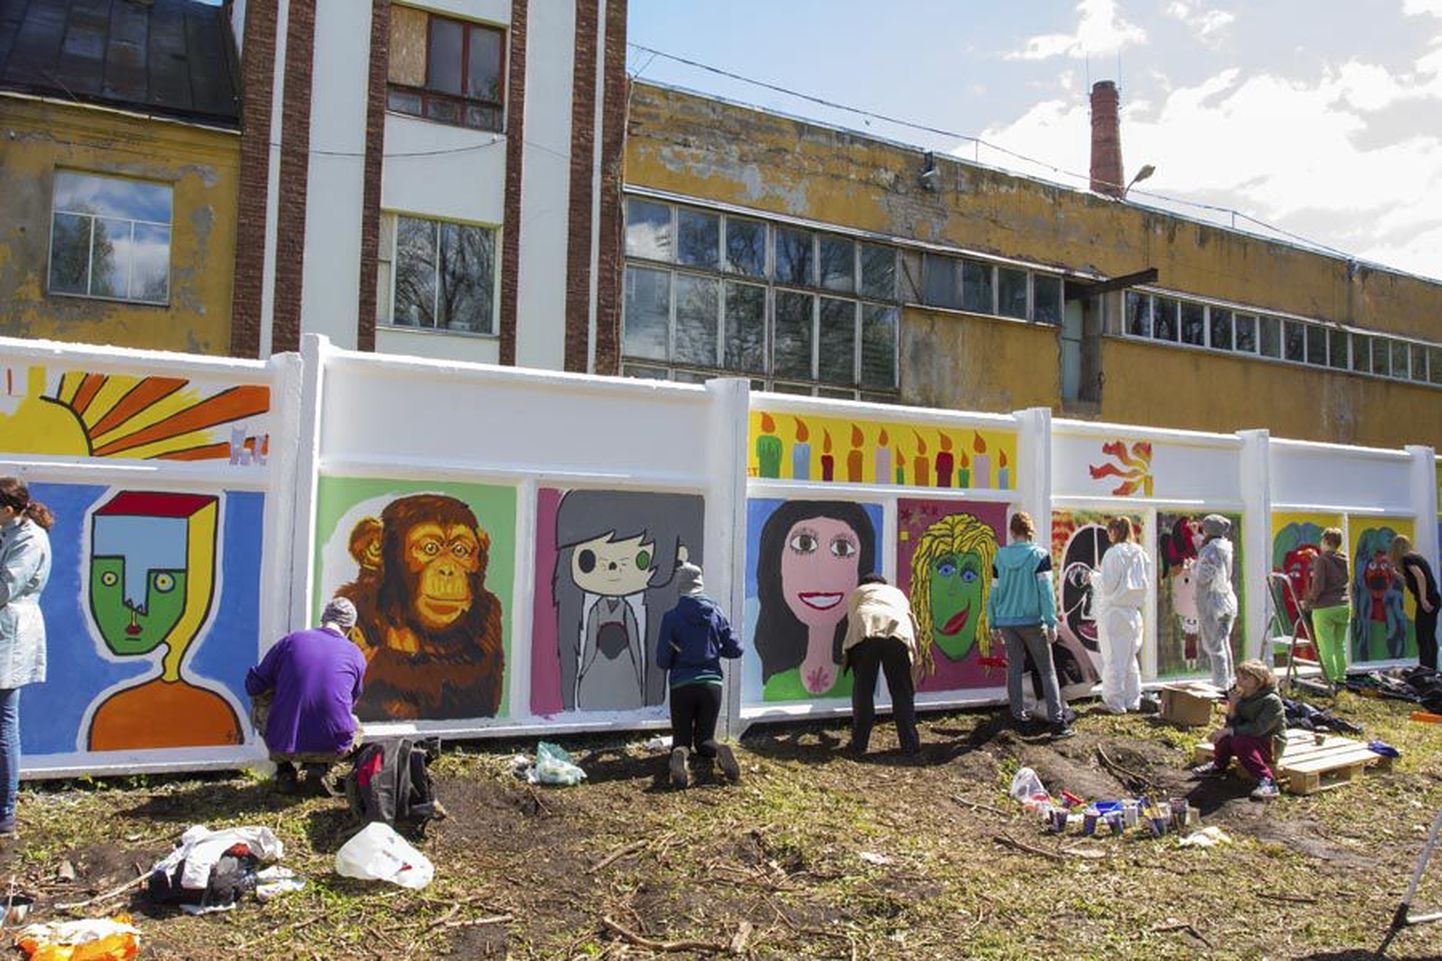 Laupäeval maalis 90 autorit Vabriku tänava betoonmüürile 72 taiest. Õhtul valisid kõik osalejad parima töö ning võit läks jagamisele. Üks kahest võidutööst oli fotol nähtav ahvi pilt, mille joonistas Ivar Smolin.